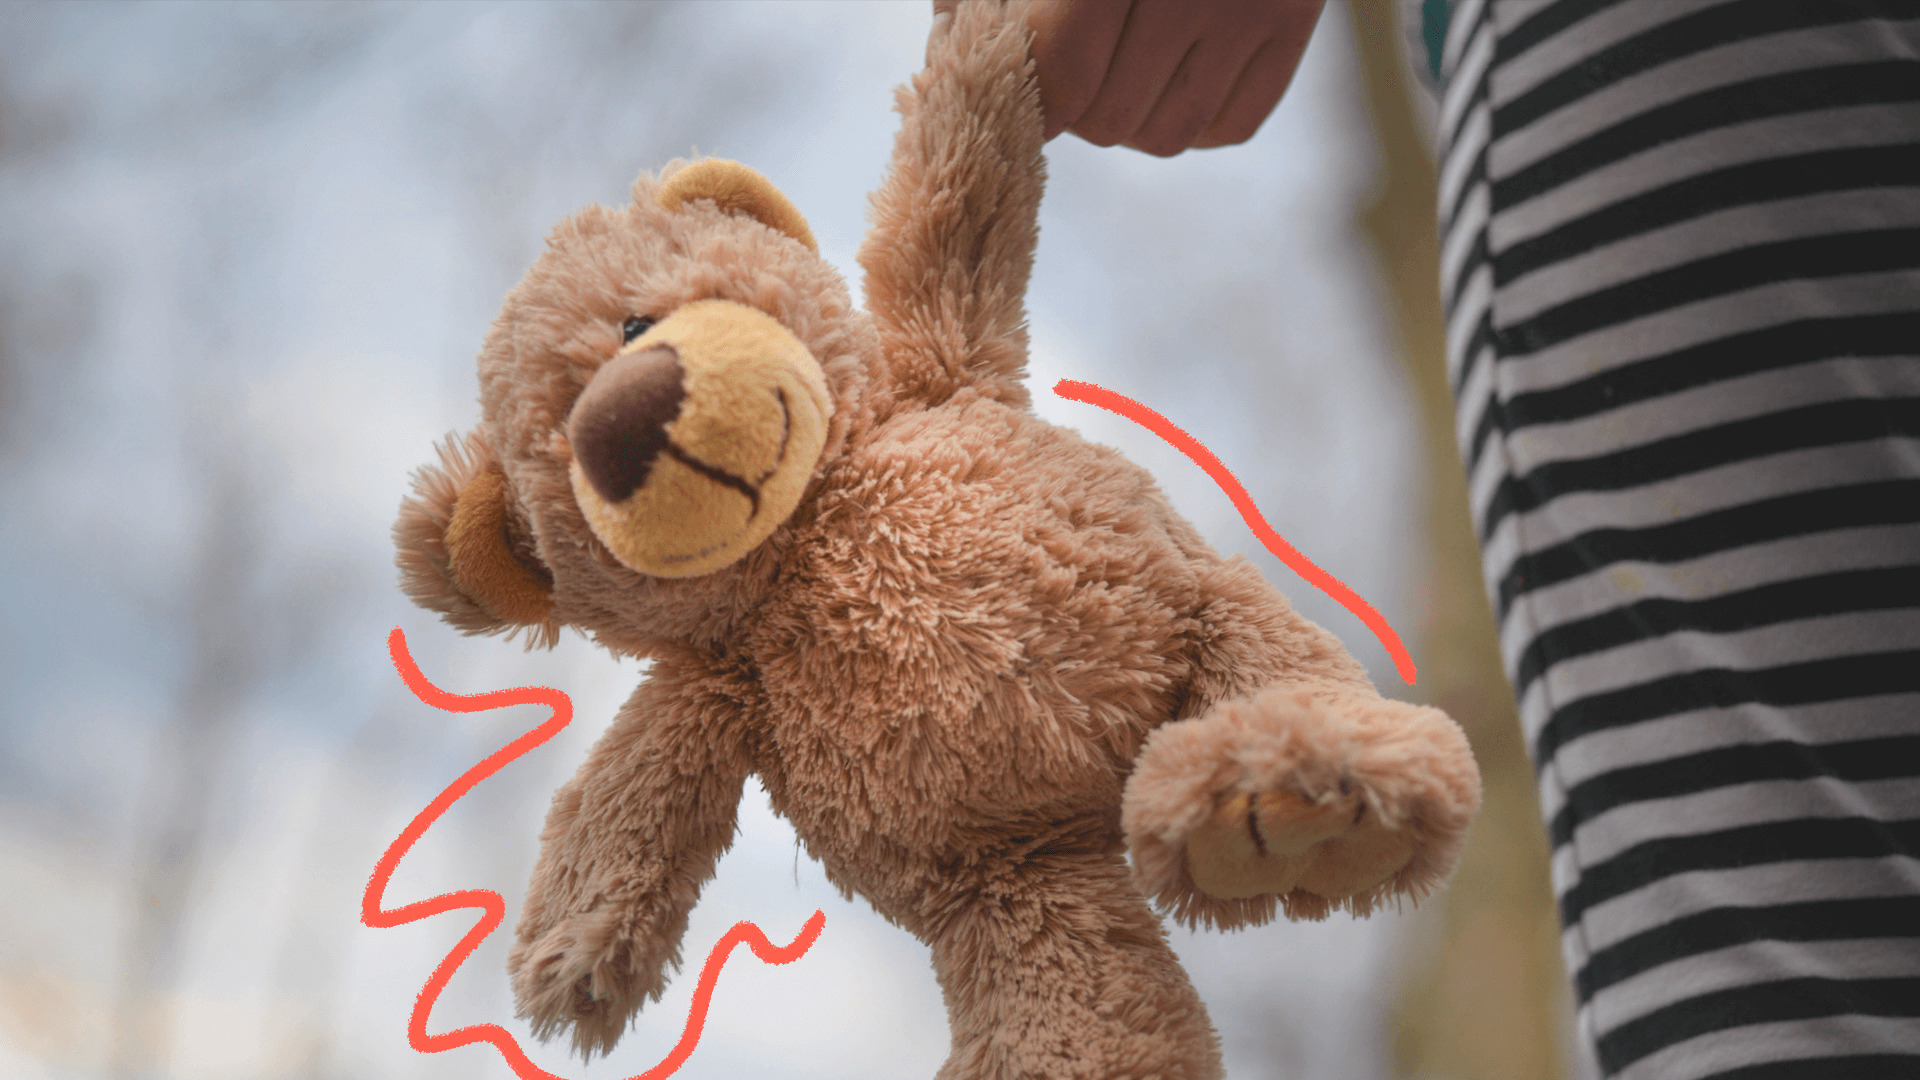 imagem sobre o projeto antiaborto mostra um ursinho de pelúcia marrom segurado pelas mãos de uma criança